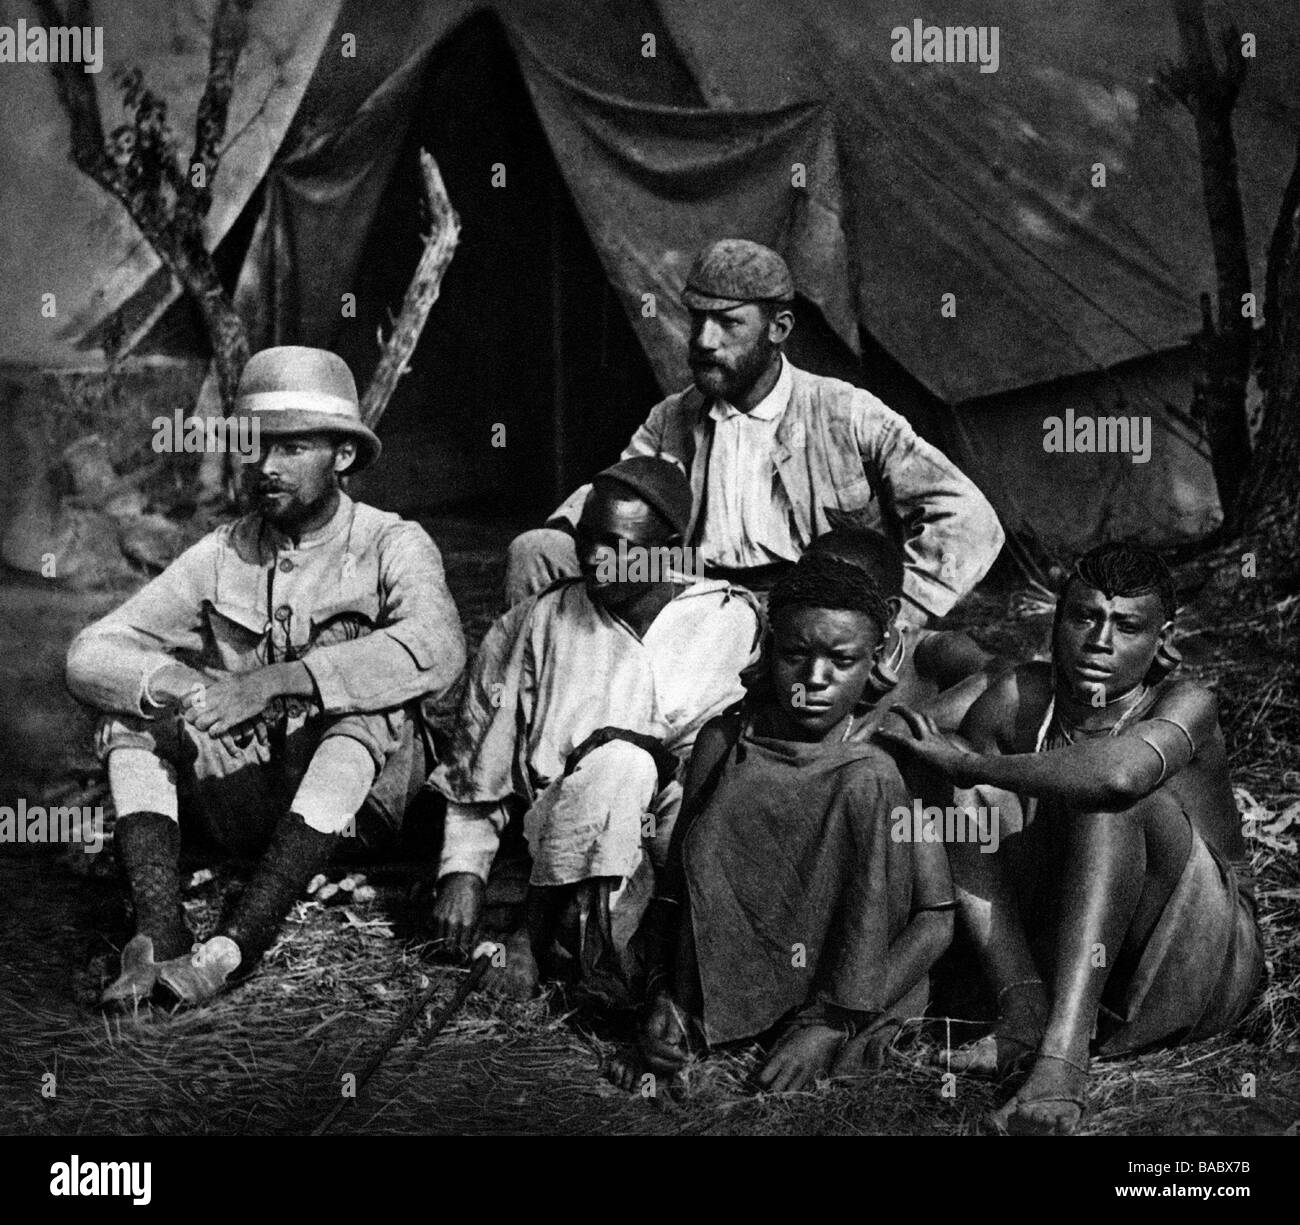 Goetzen, Gustav Adolf, Graf von, 12.5.1866 - 1.12.1910, chercheur allemand, Afrique de l'est allemande, pleine longueur, avec des autochtones pendant l'expédition par colonie, début 1900, Banque D'Images